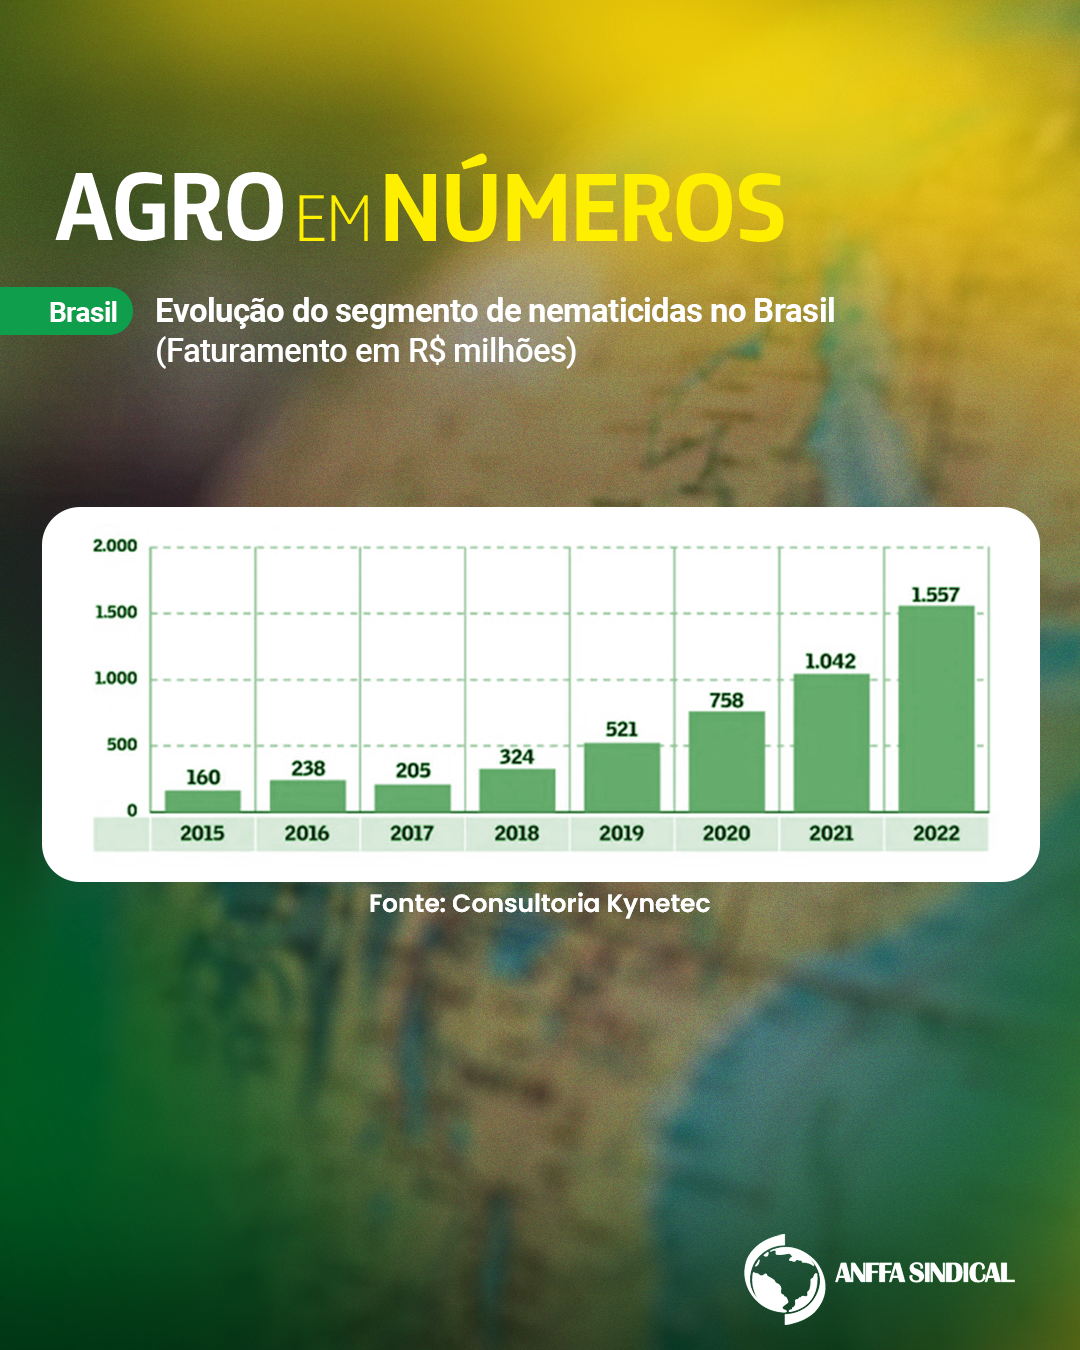 Evolução do segmento de nematicidas no Brasil (faturamento em R$ milhões)